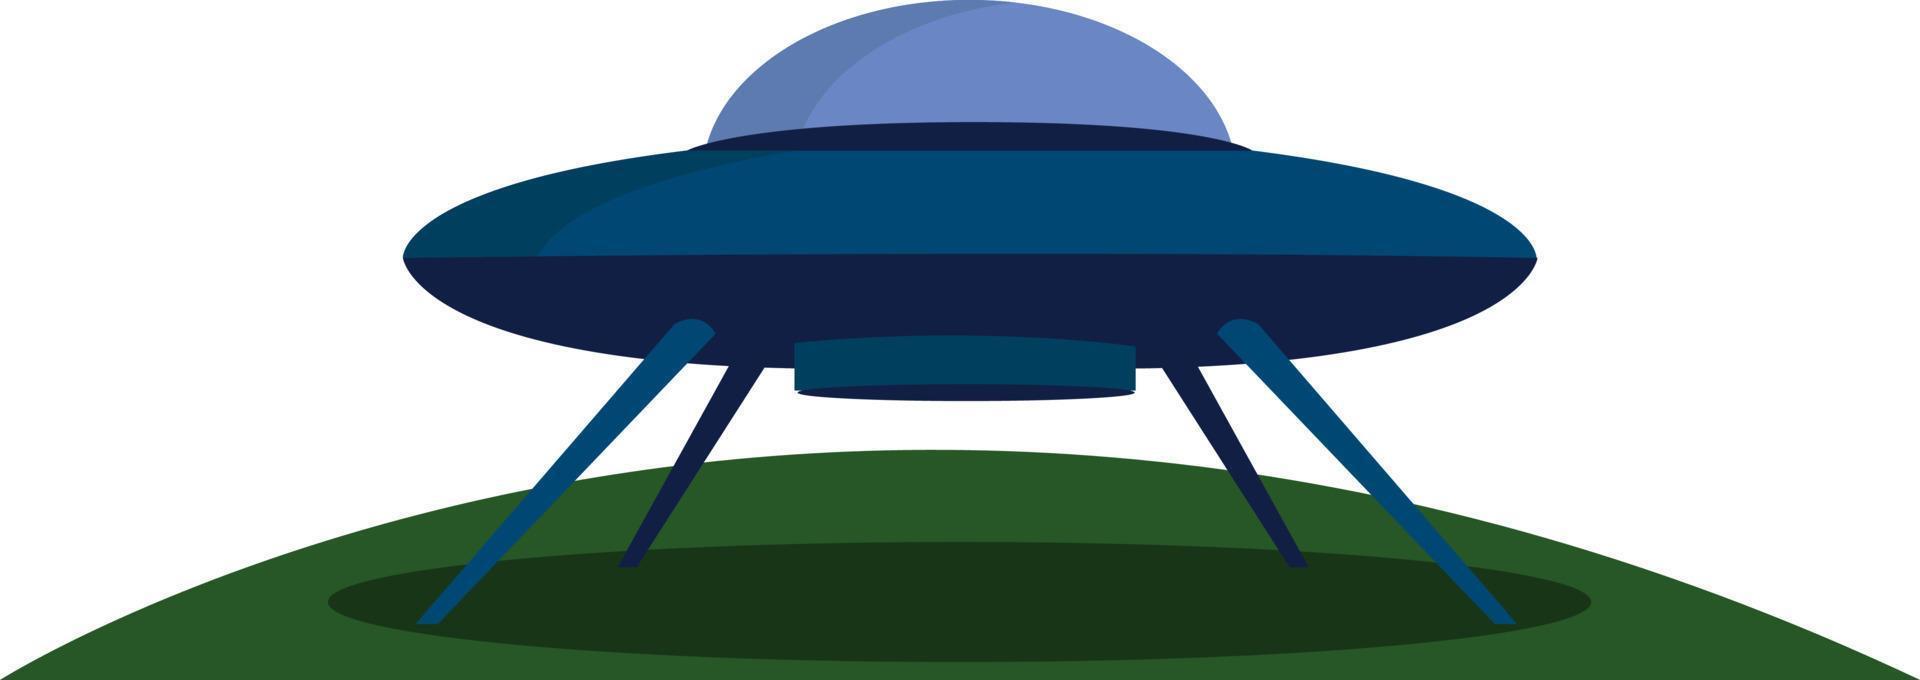 UFO landning, illustration, vektor på vit bakgrund